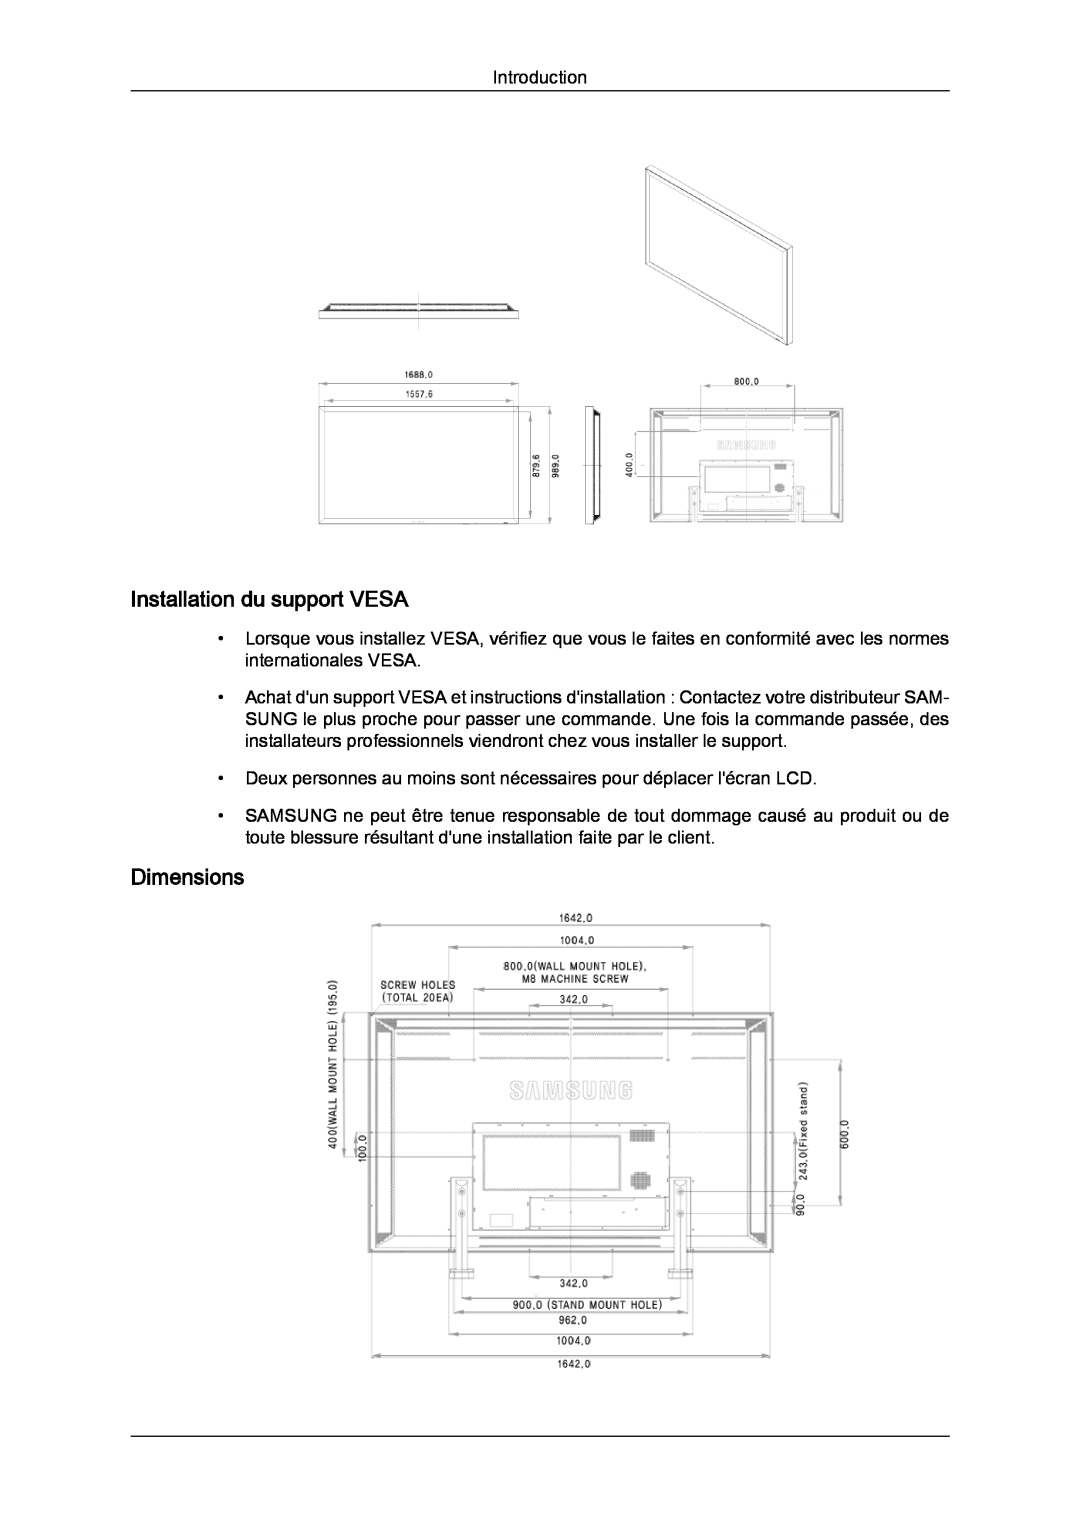 Samsung LH70TCUMBG/EN, LH82TCUMBG/EN, LH70TCSMBG/EN manual Installation du support VESA, Dimensions 